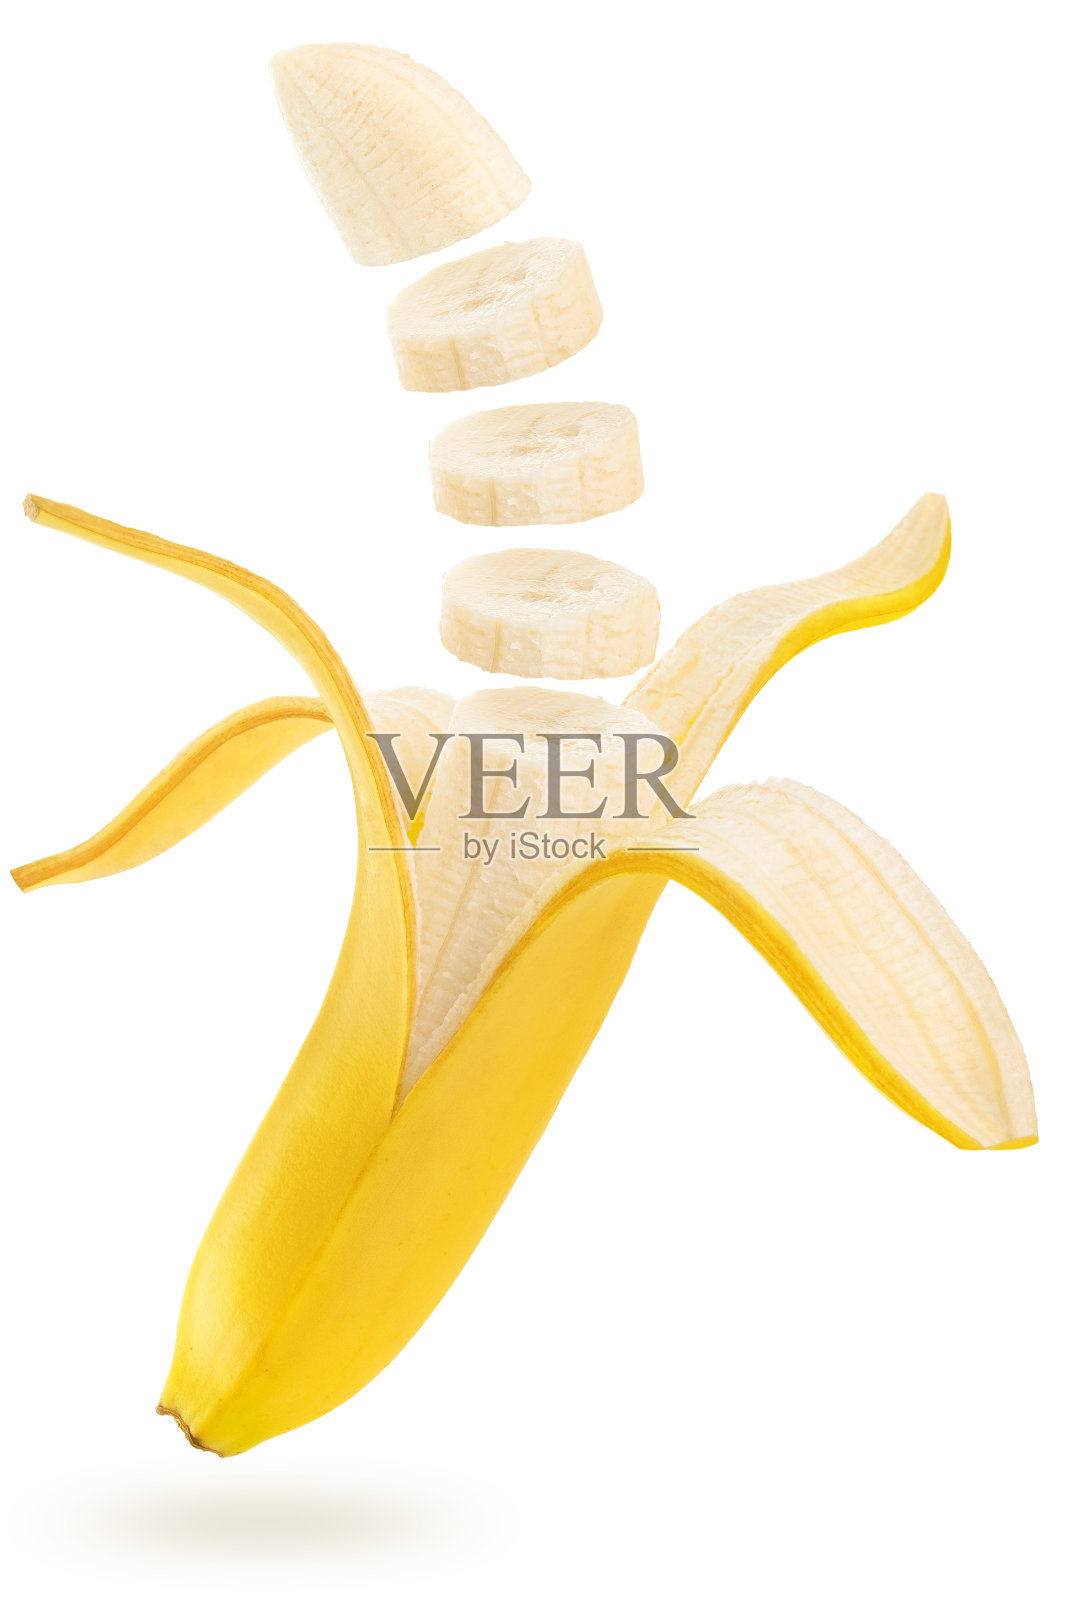 切片香蕉漂浮在白色的背景上照片摄影图片